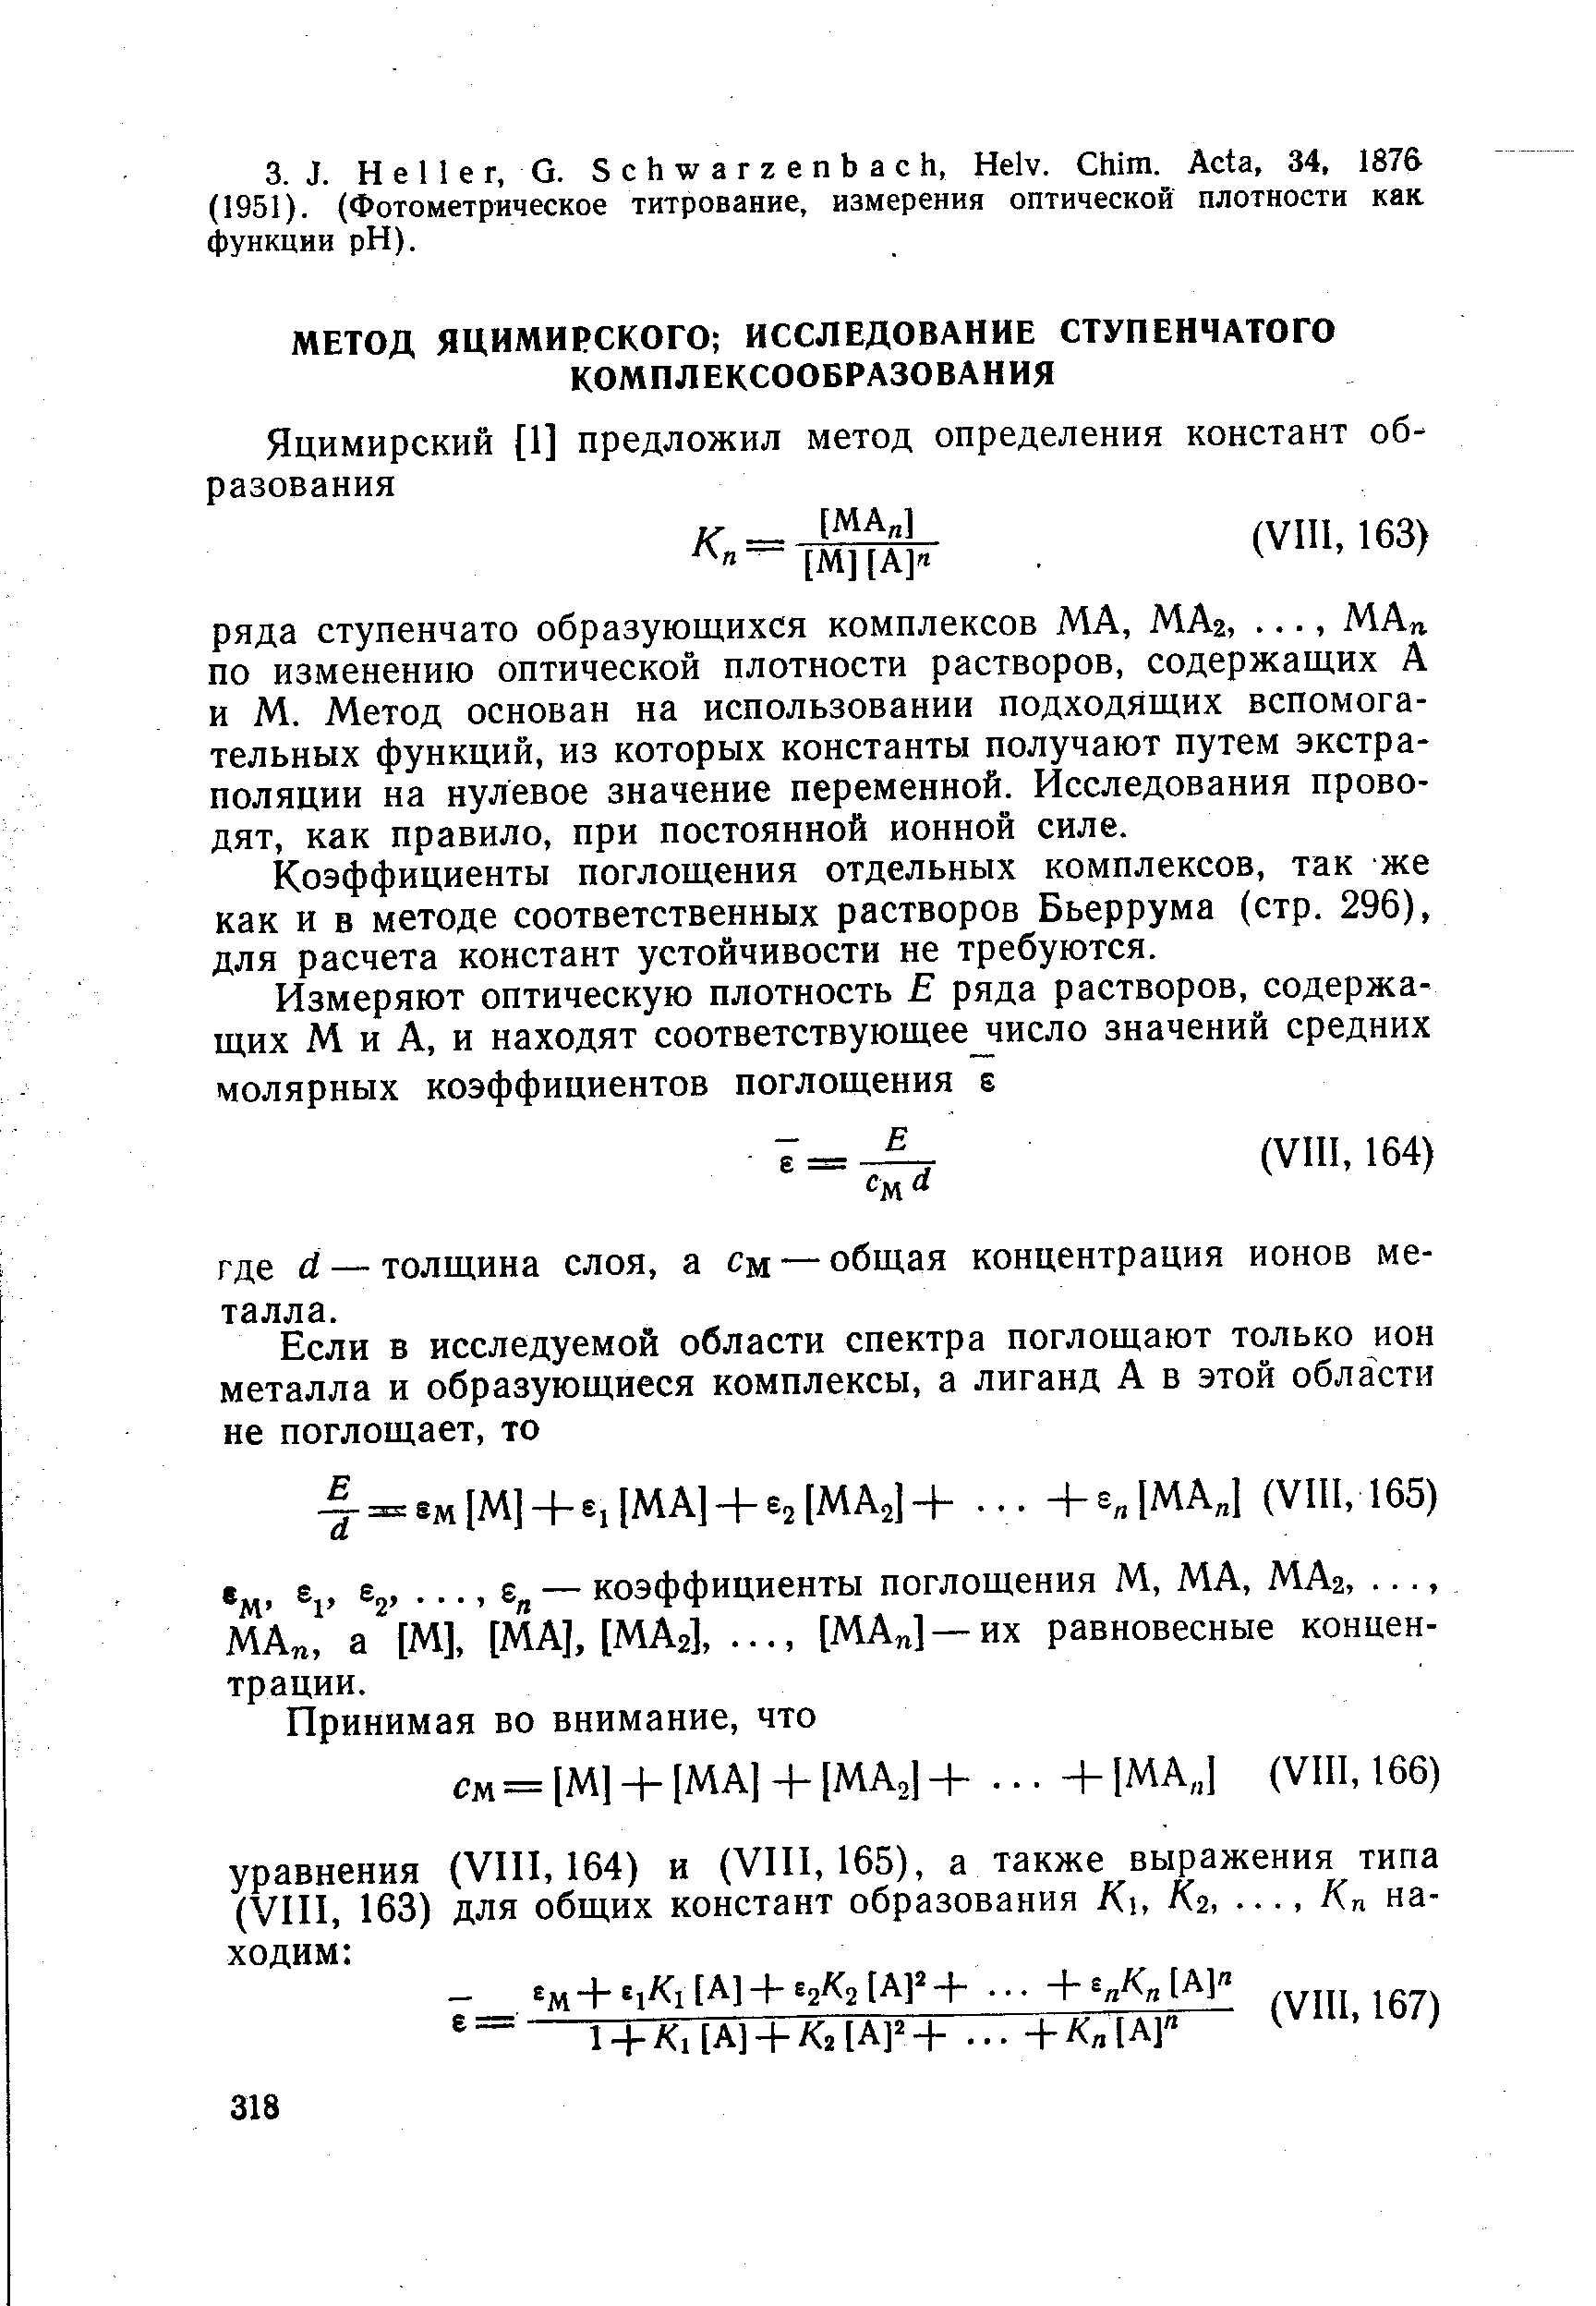 Коэффициенты поглощения отдельных комплексов, так же как и в методе соответственных растворов Бьеррума (стр. 296), для расчета констант устойчивости не требуются.